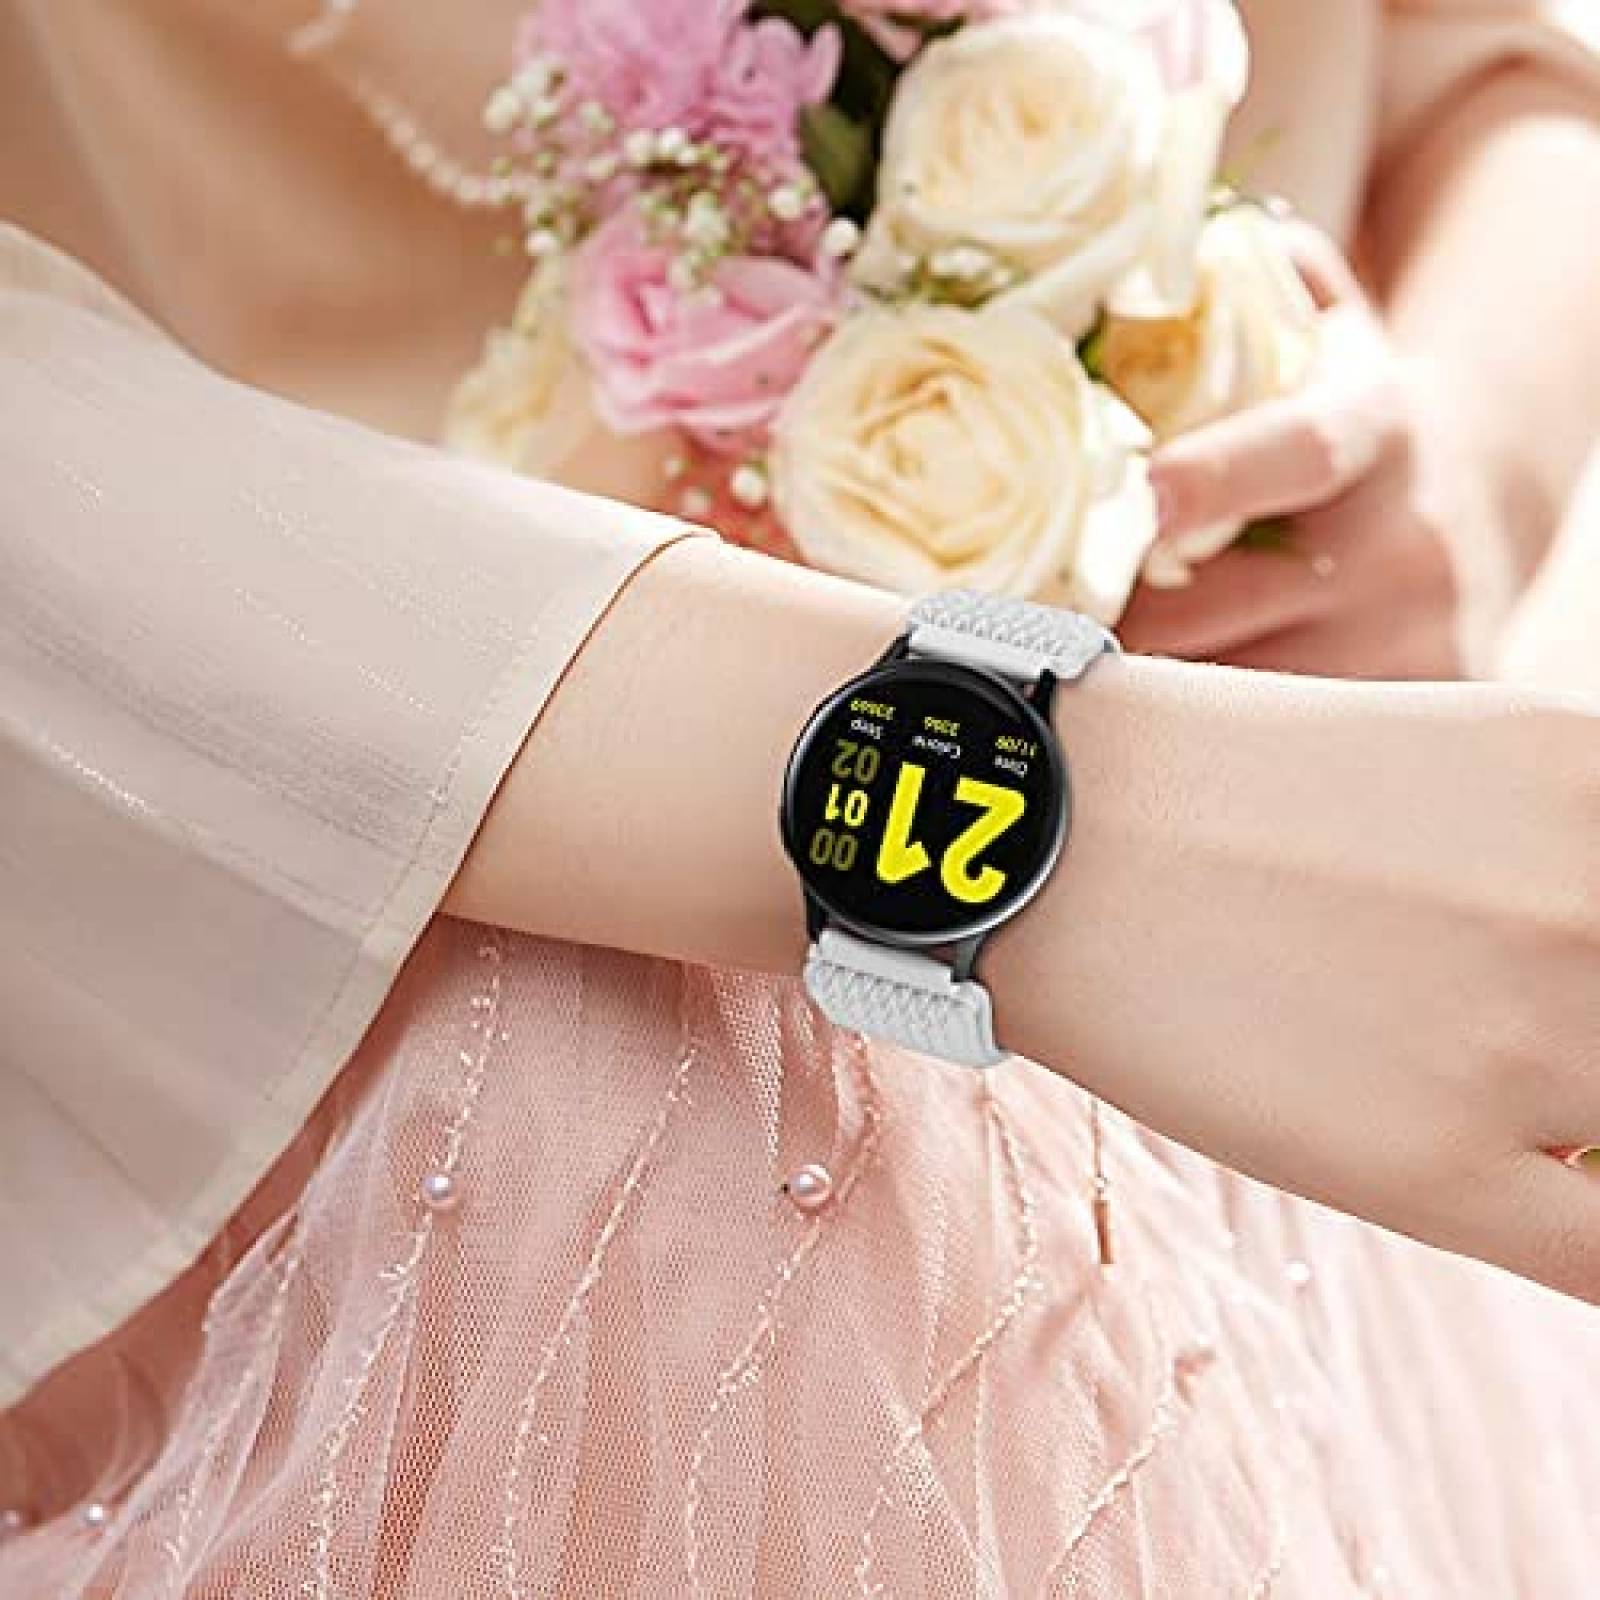 Correa Reloj 20mm Samsung Galaxy Watch 4 Tejido Flexible - Morado